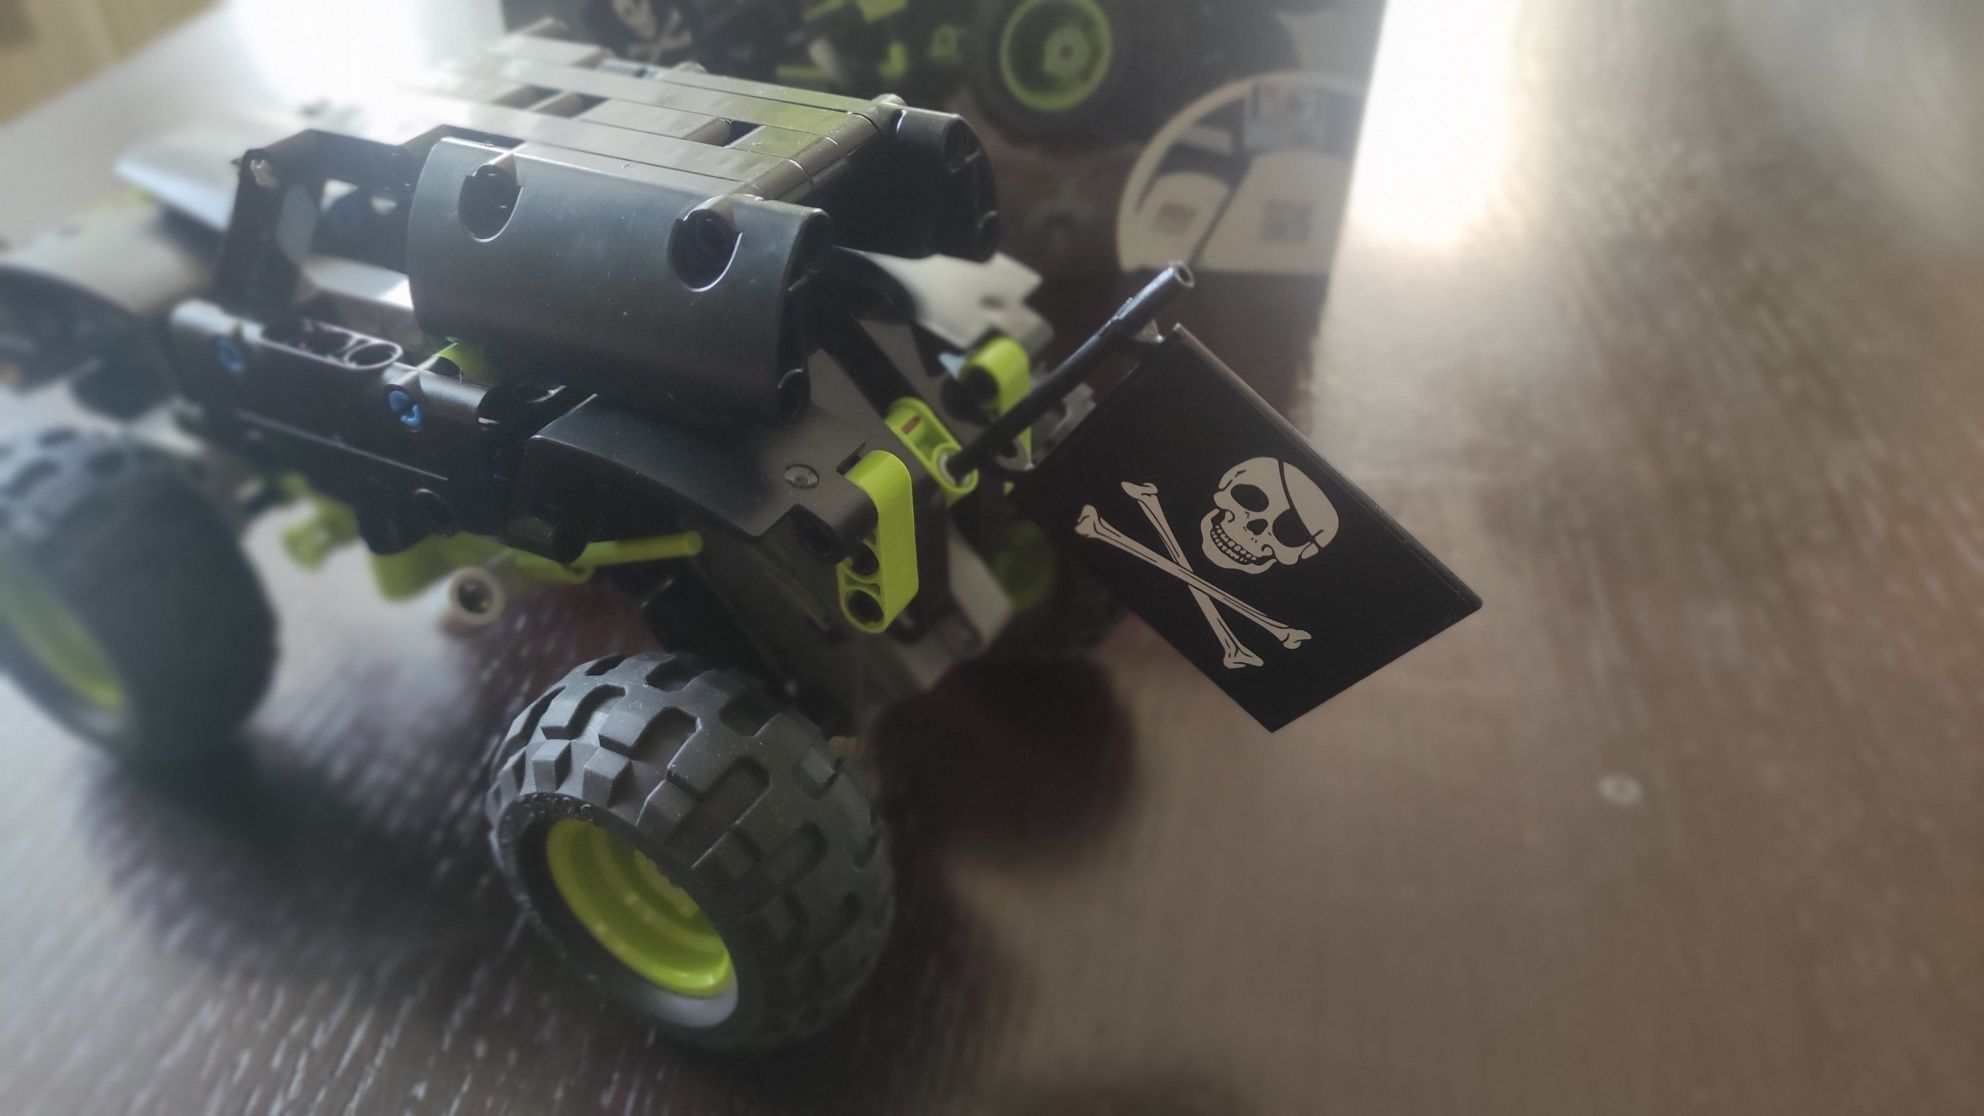 Lego Technic - Monster Jam Grave Digger